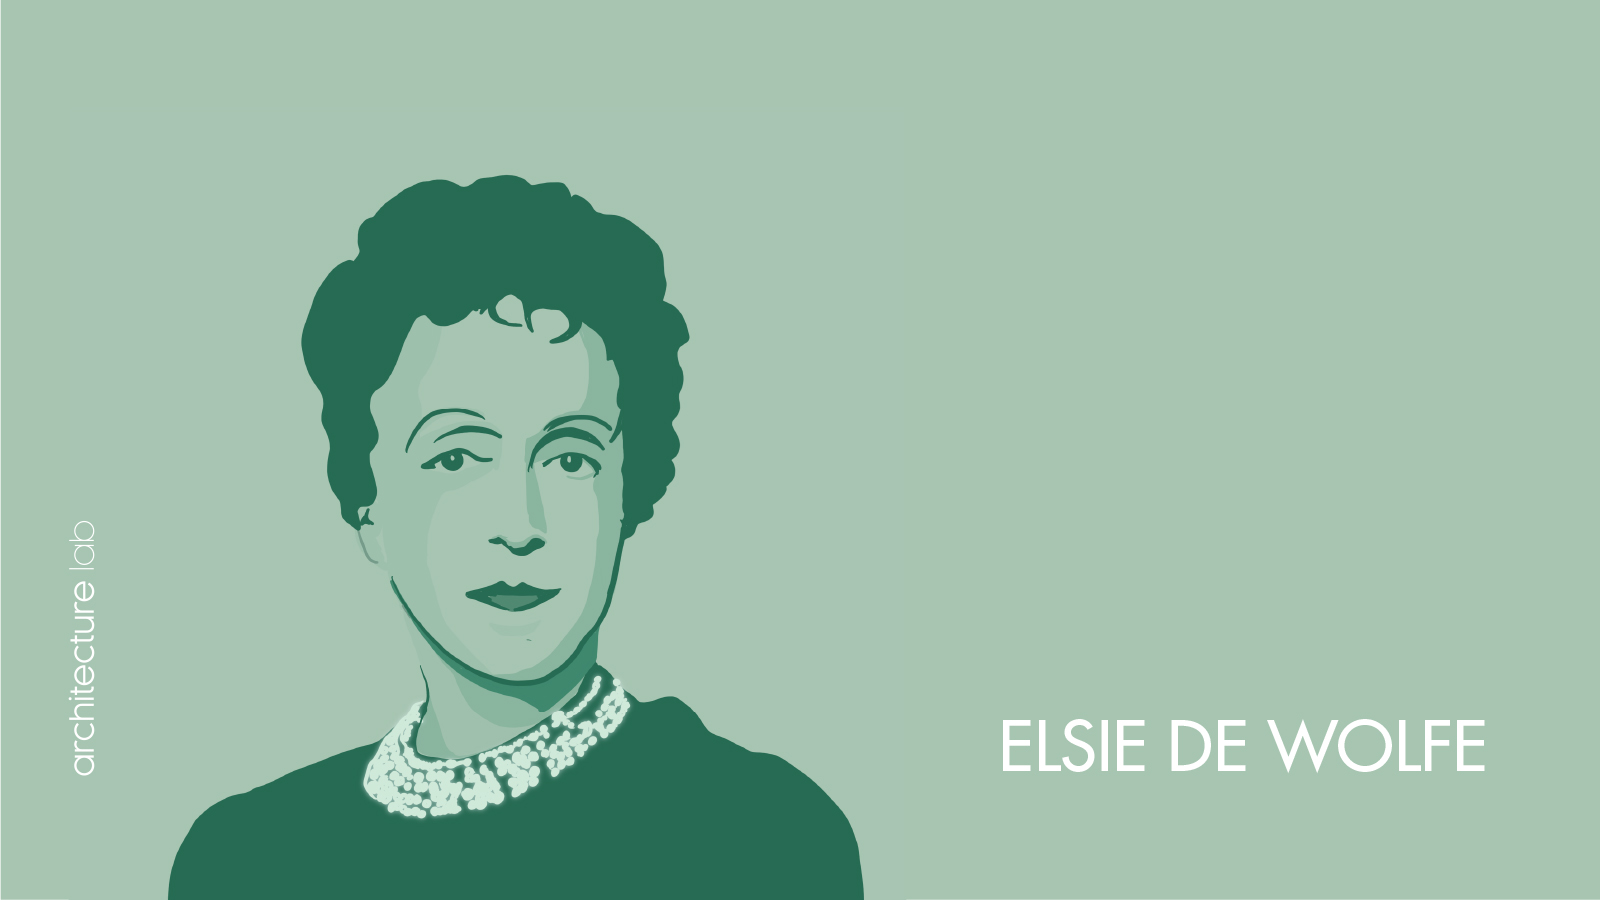 Elsie de wolfe: biography, works, awards